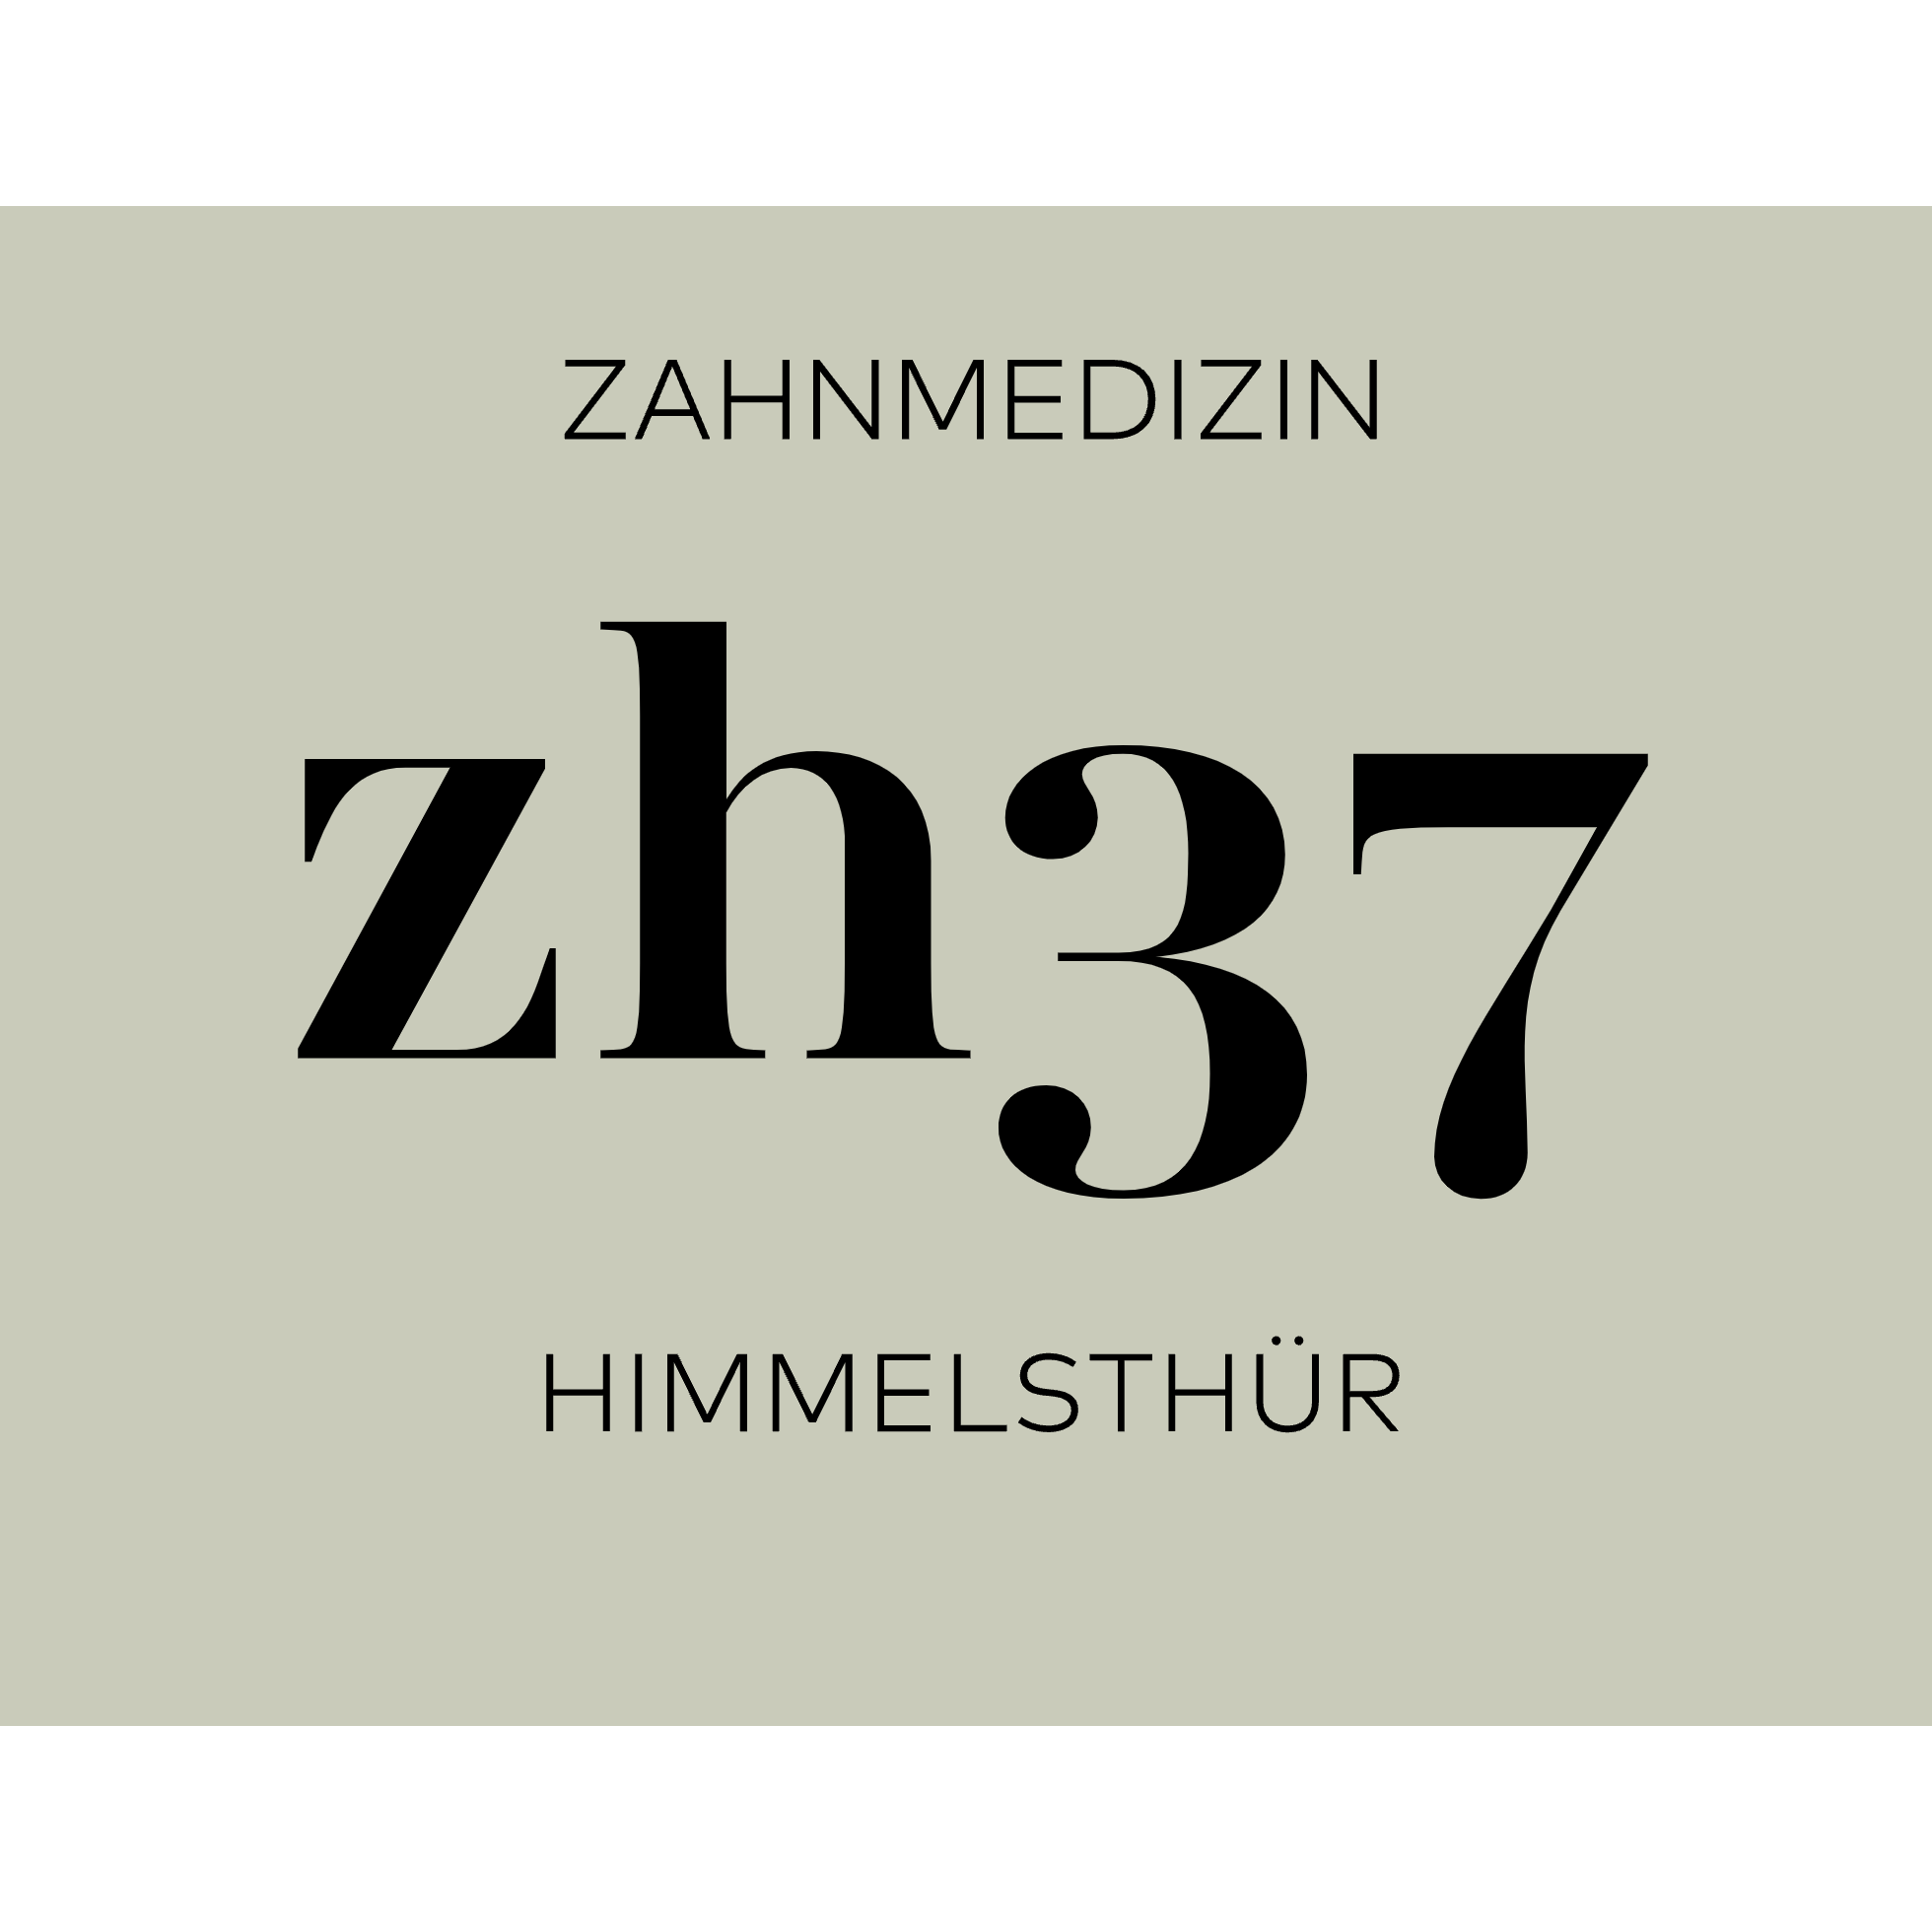 Zahnmedizin Himmelsthür zh37 - Zahnarzt Hildesheim in Hildesheim - Logo